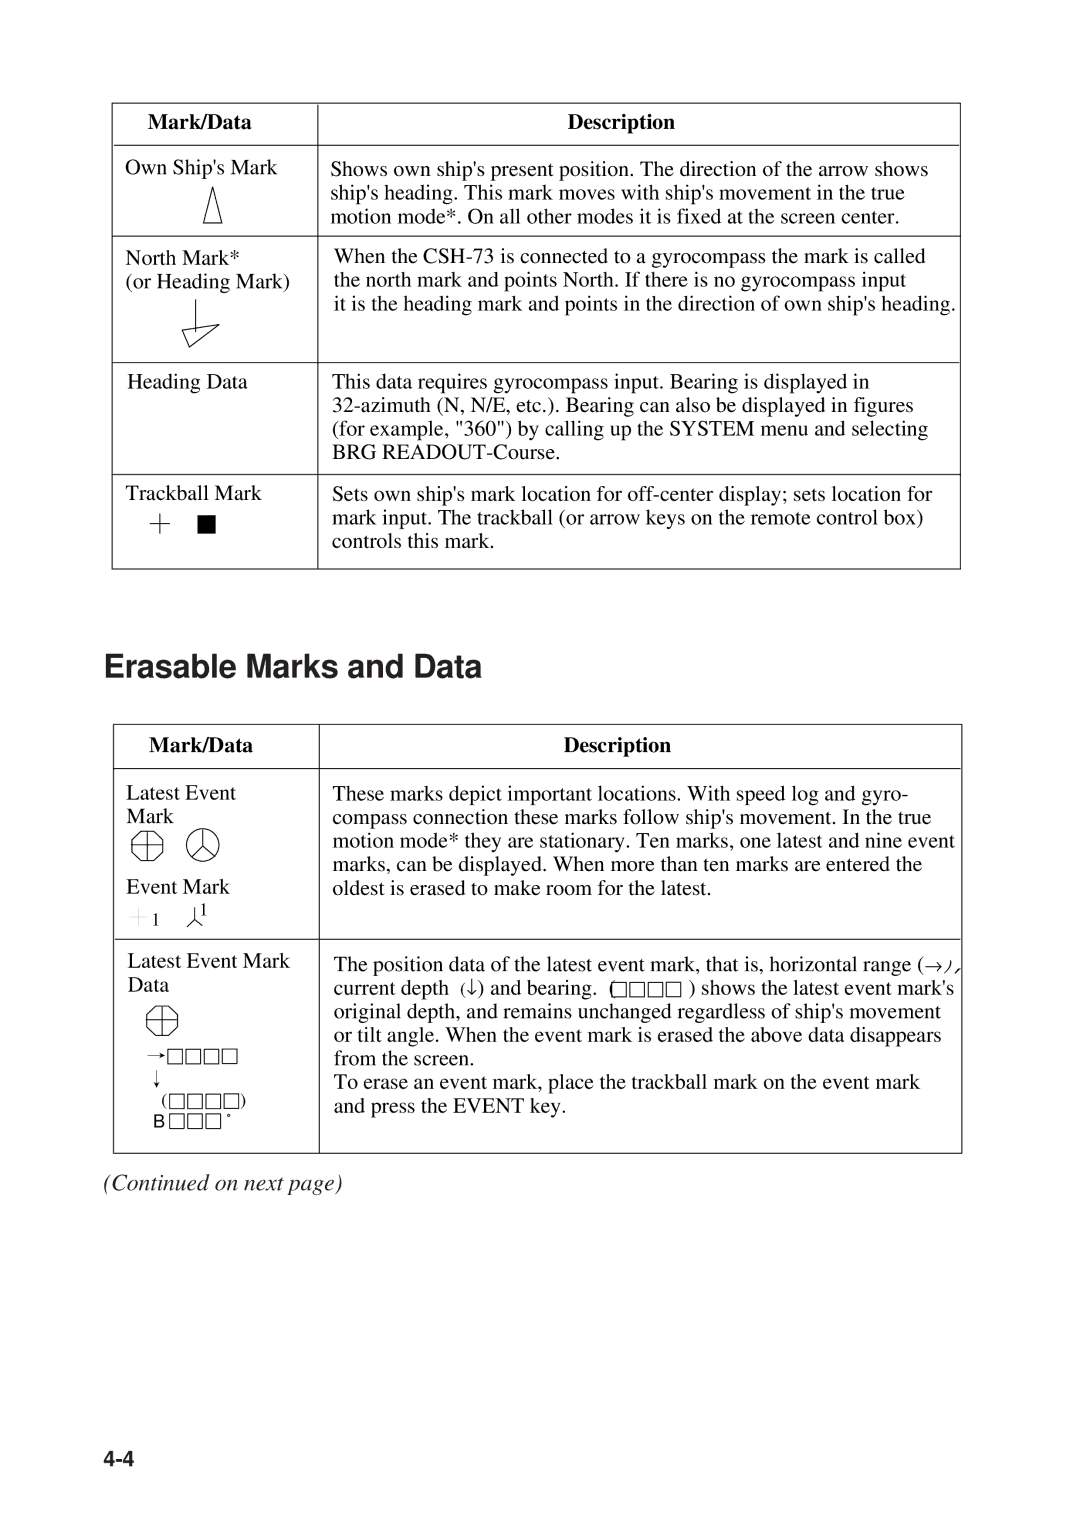 Furuno MODEL CSH-73 manual Erasable Marks and Data, Mark/Data Description 